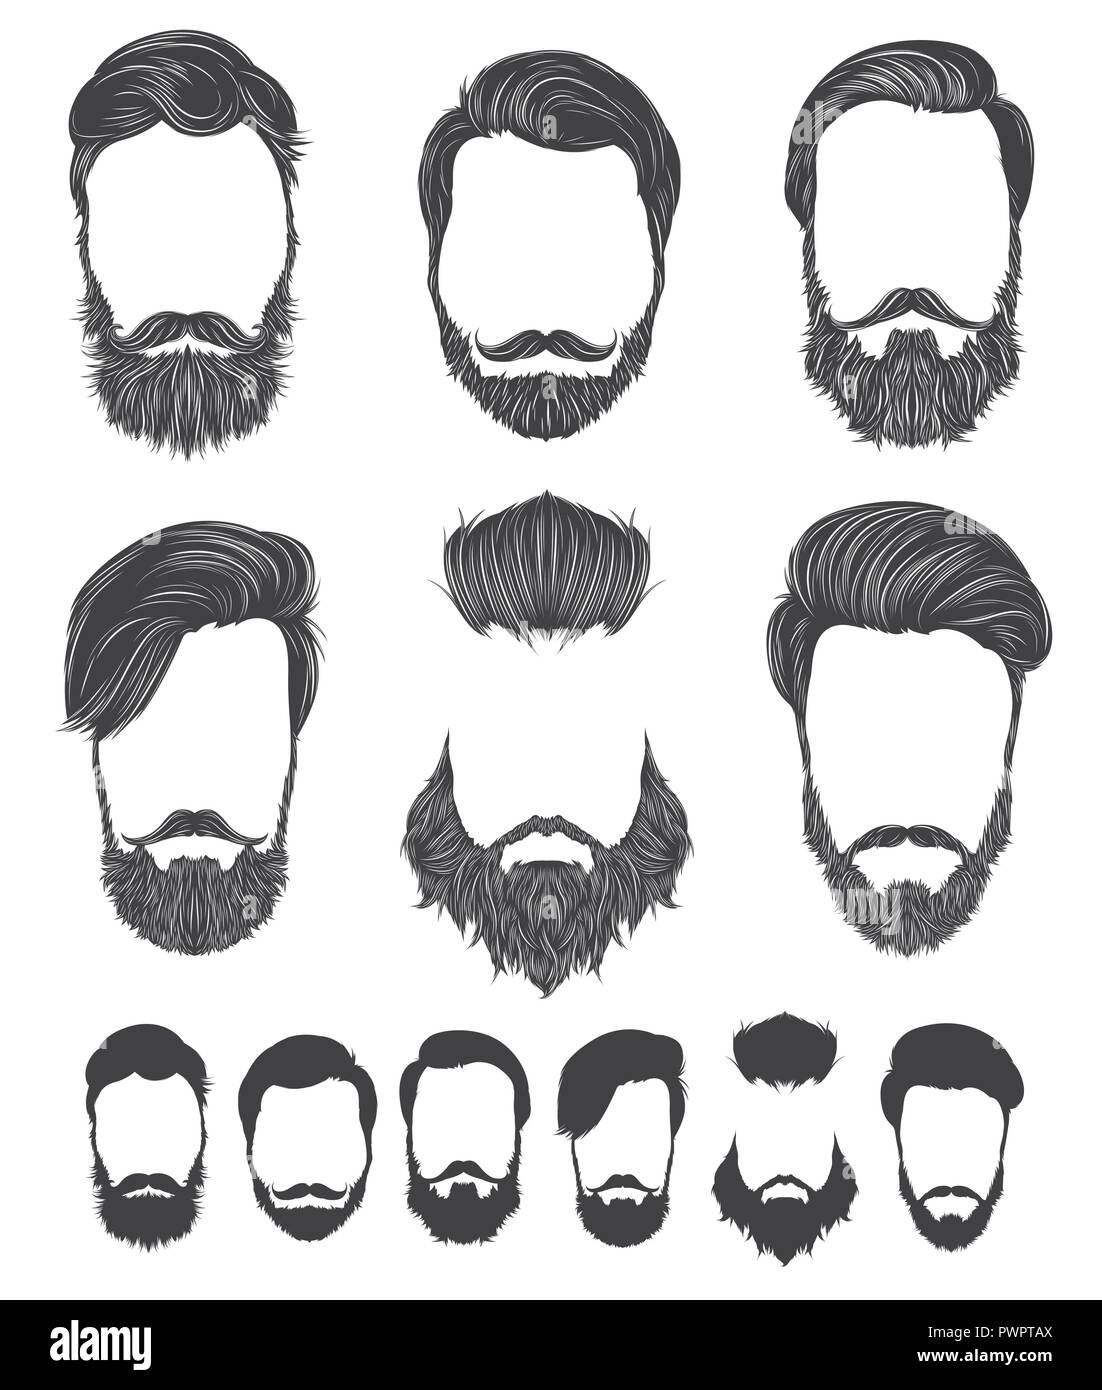 Frisur und Bart hipster Mode, Vektorgrafiken Vorlage für Ihr Design Stock Vektor